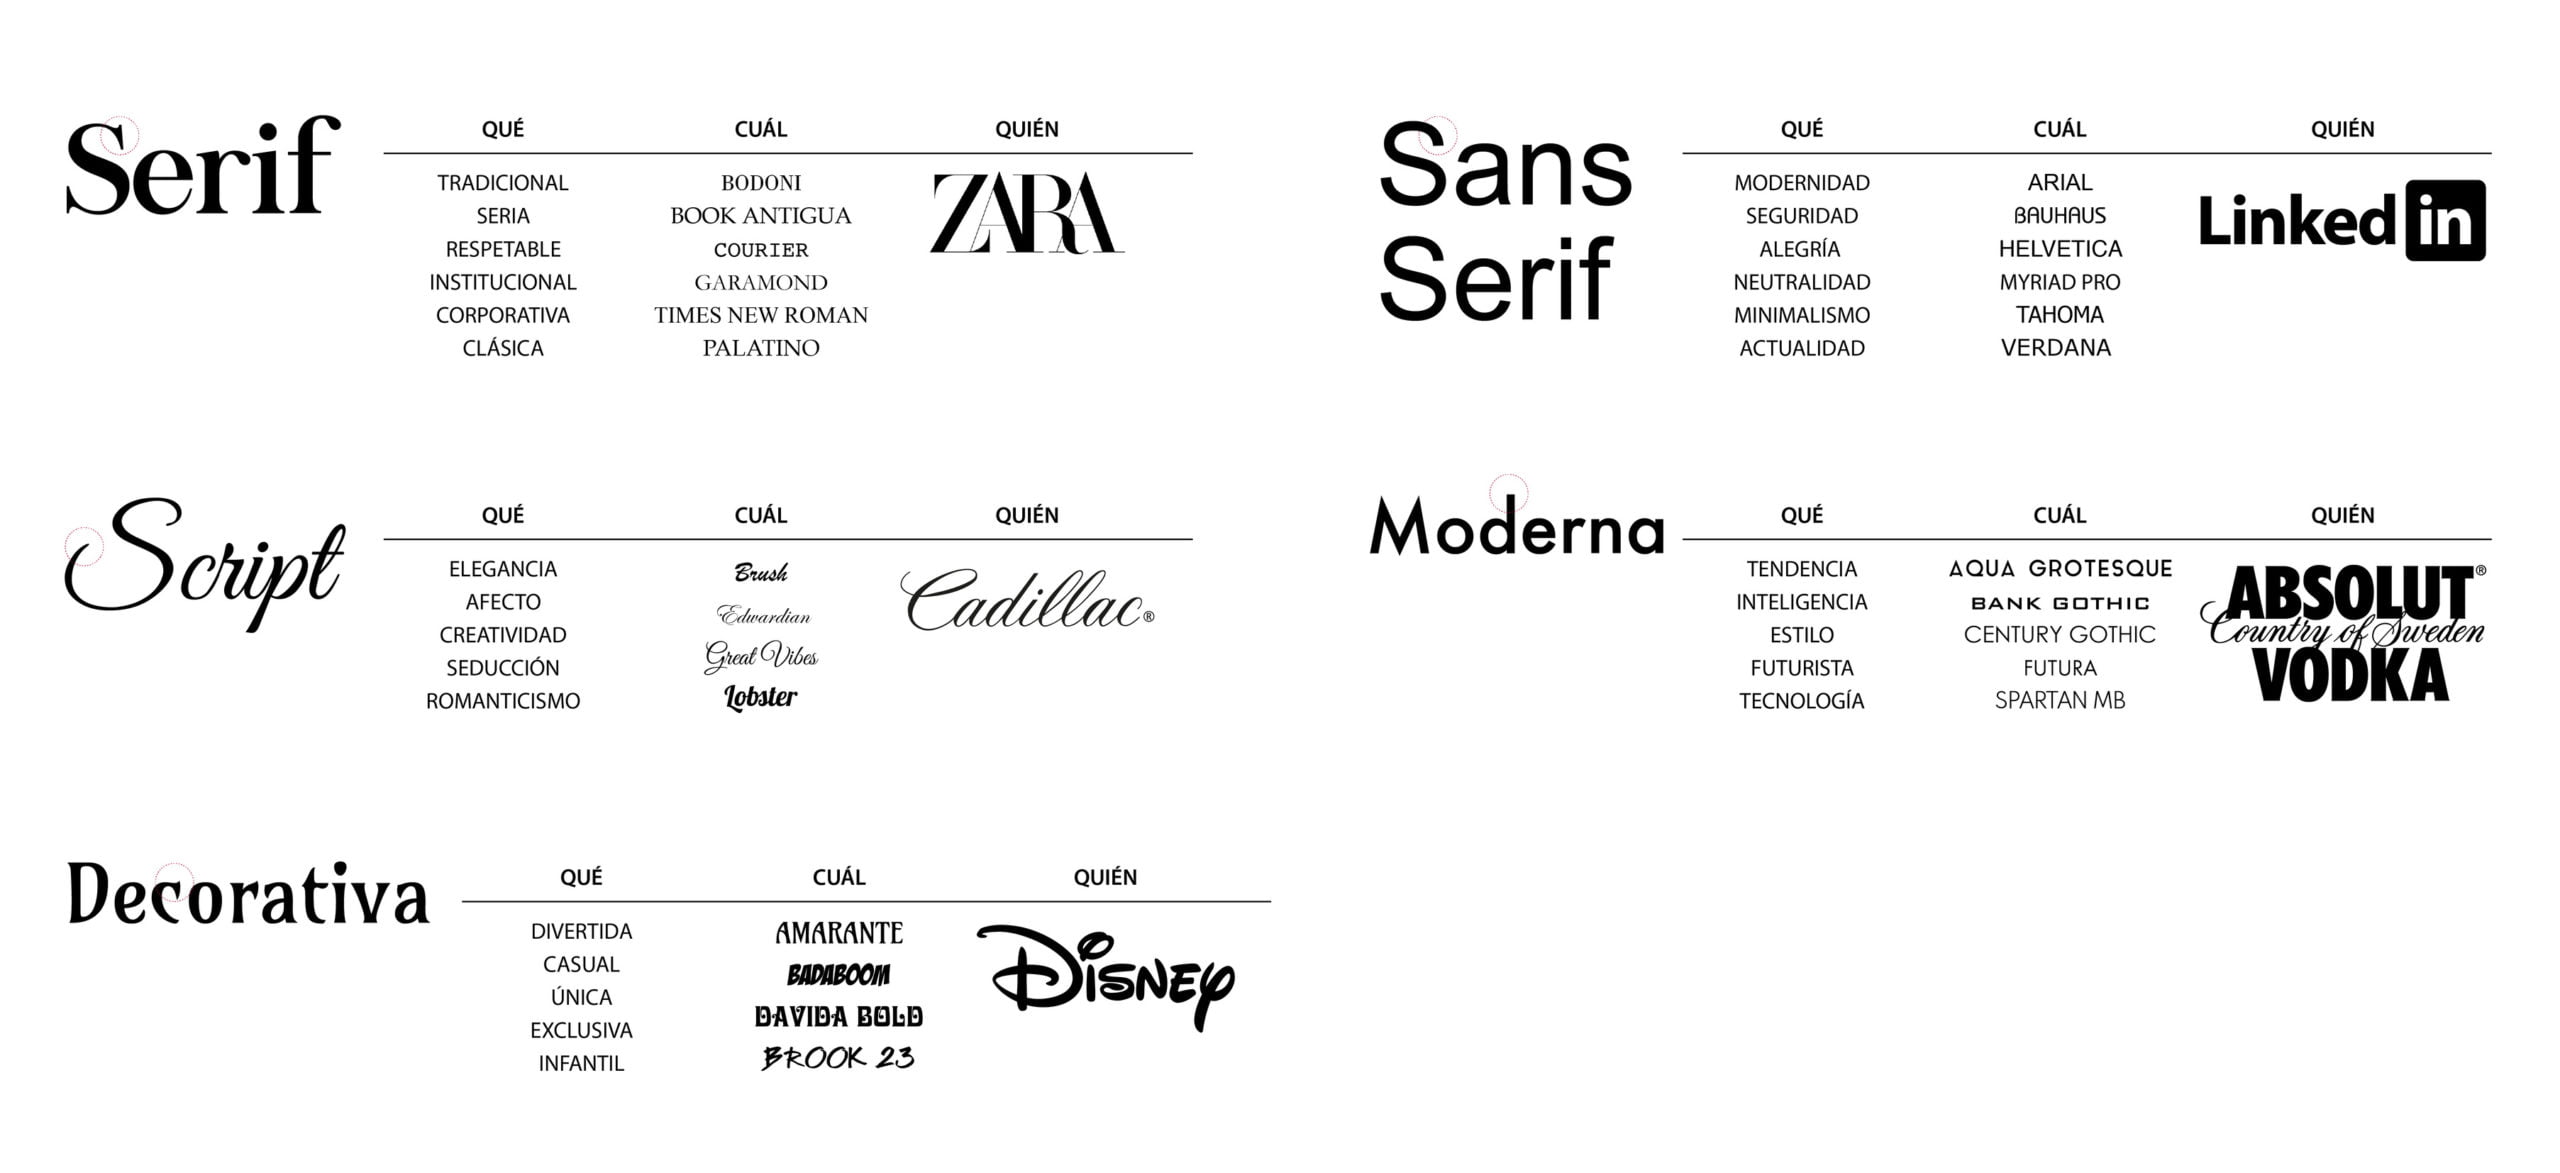 como hacer un logotipo, logo vectorizado, logotipo, logo